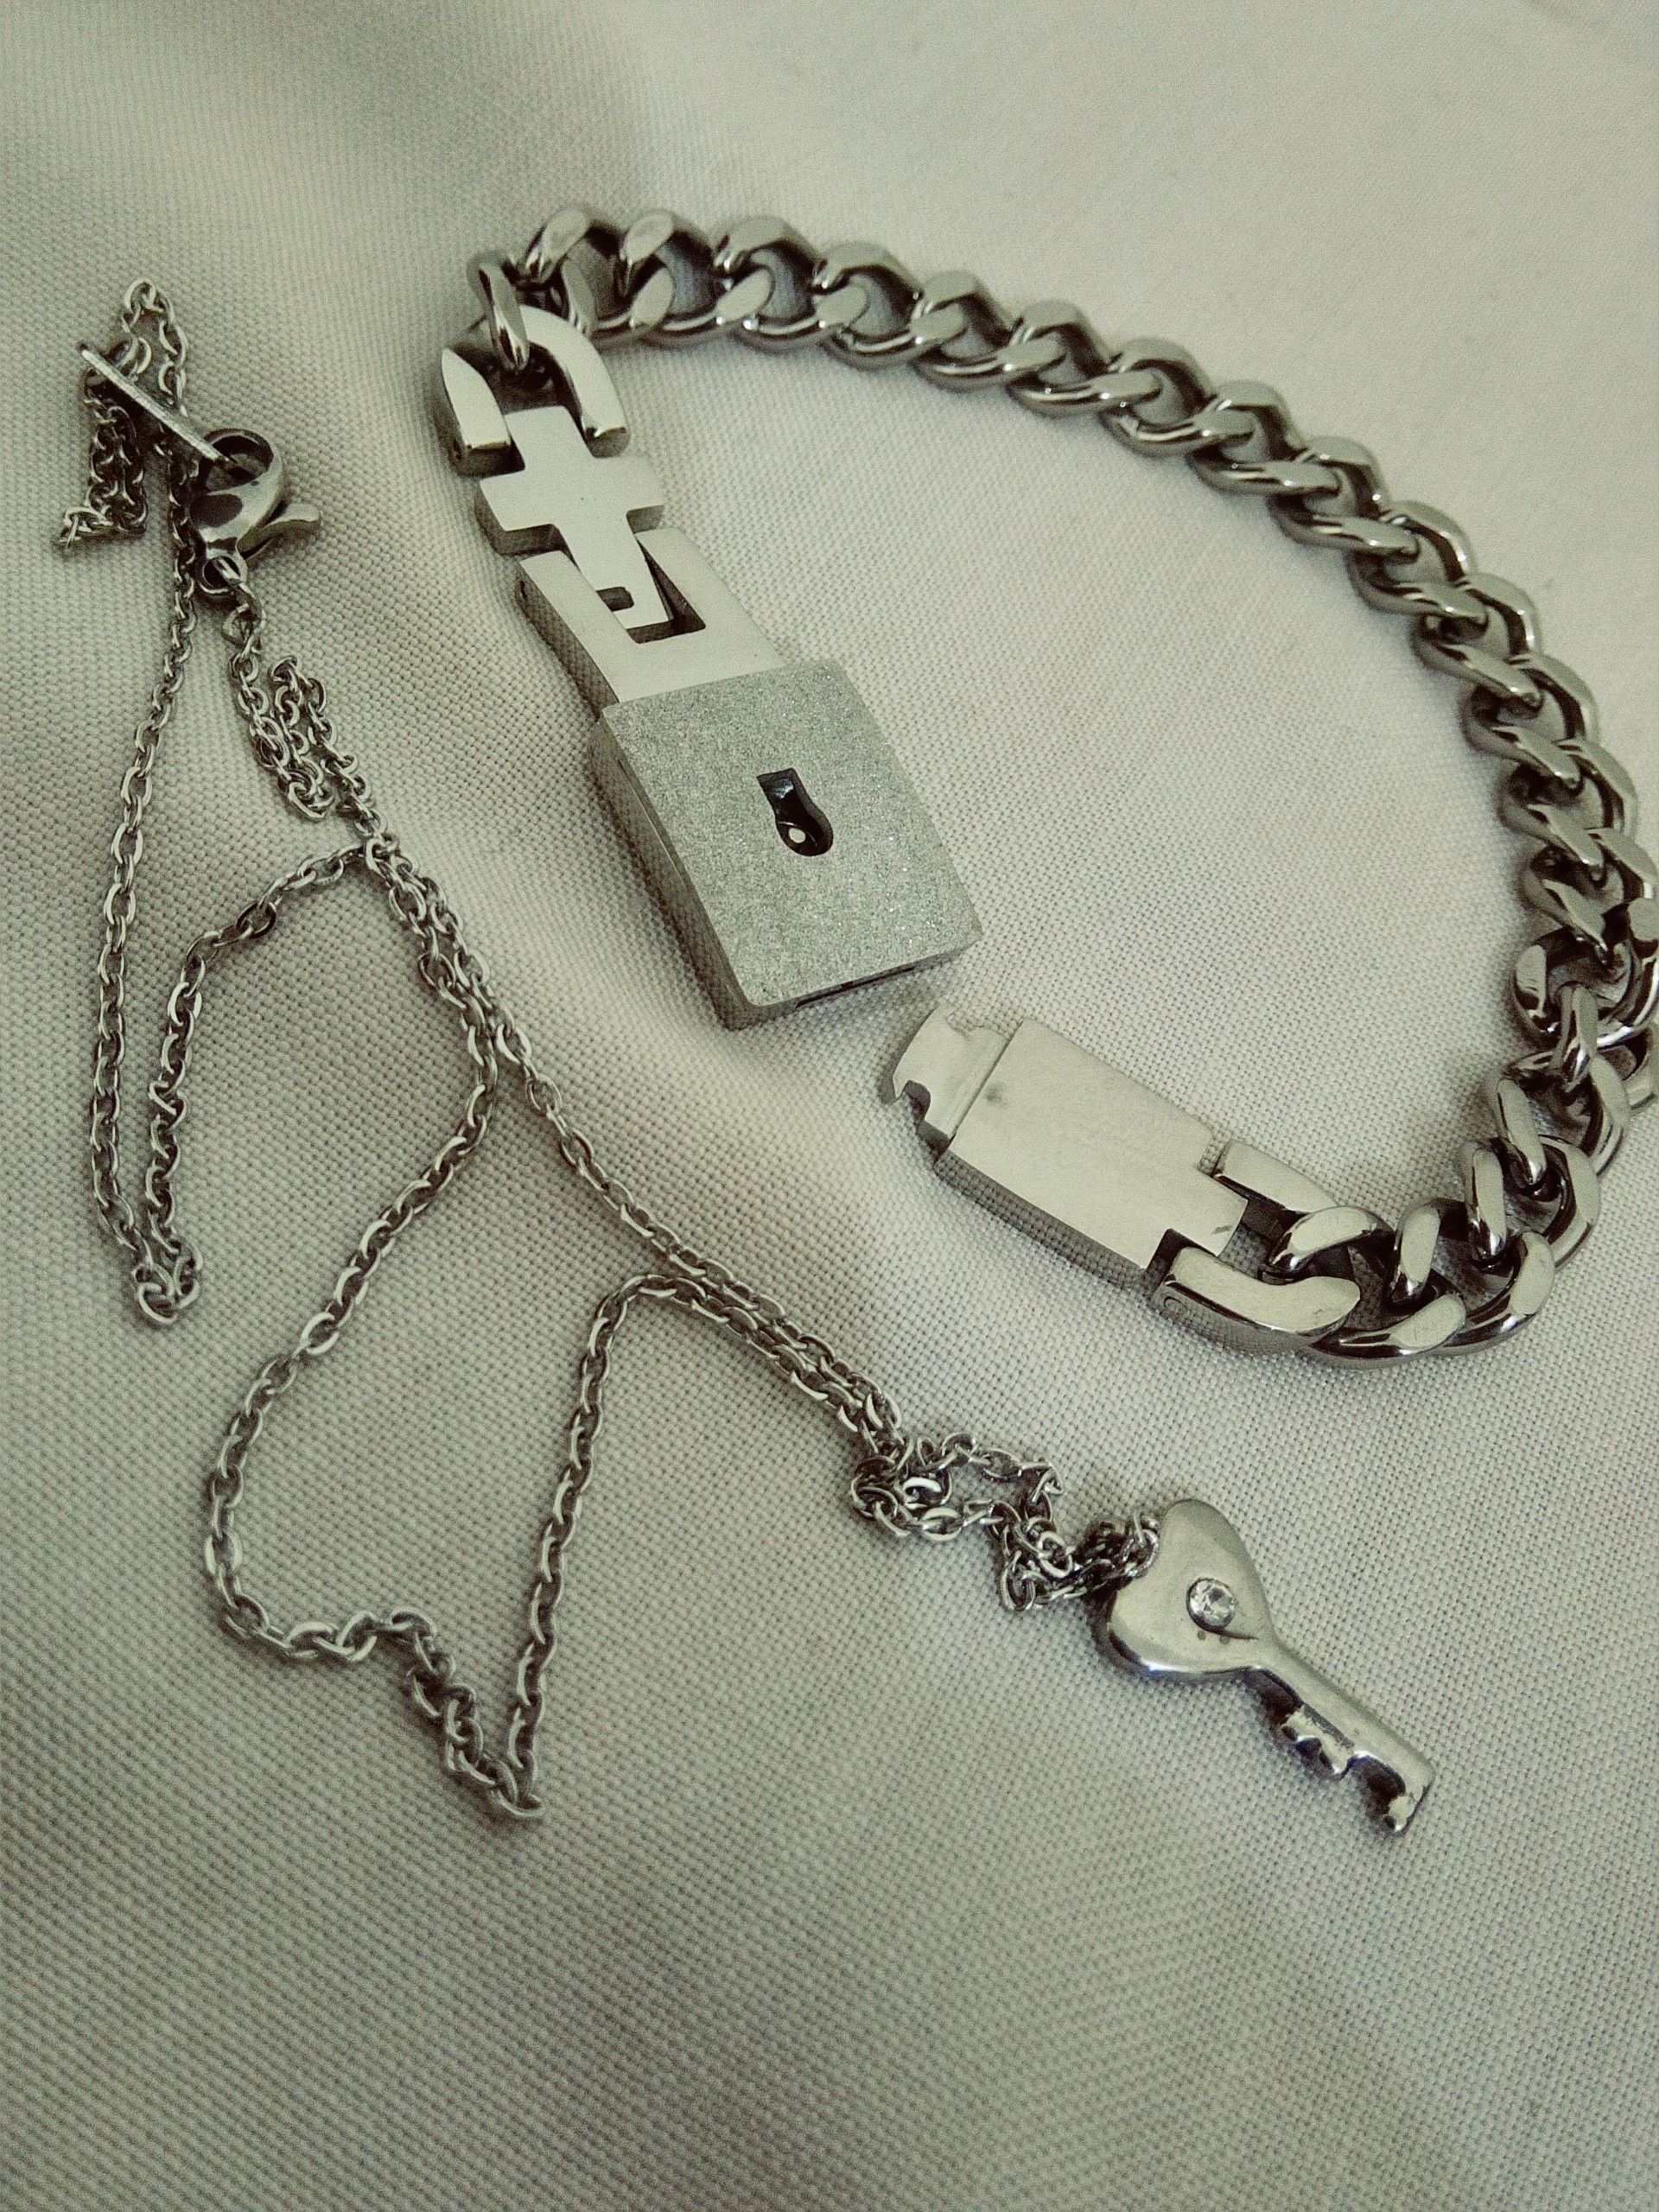 Love Lock Key Bracelet Pendant Online In Pakistan – The Dapper Shop